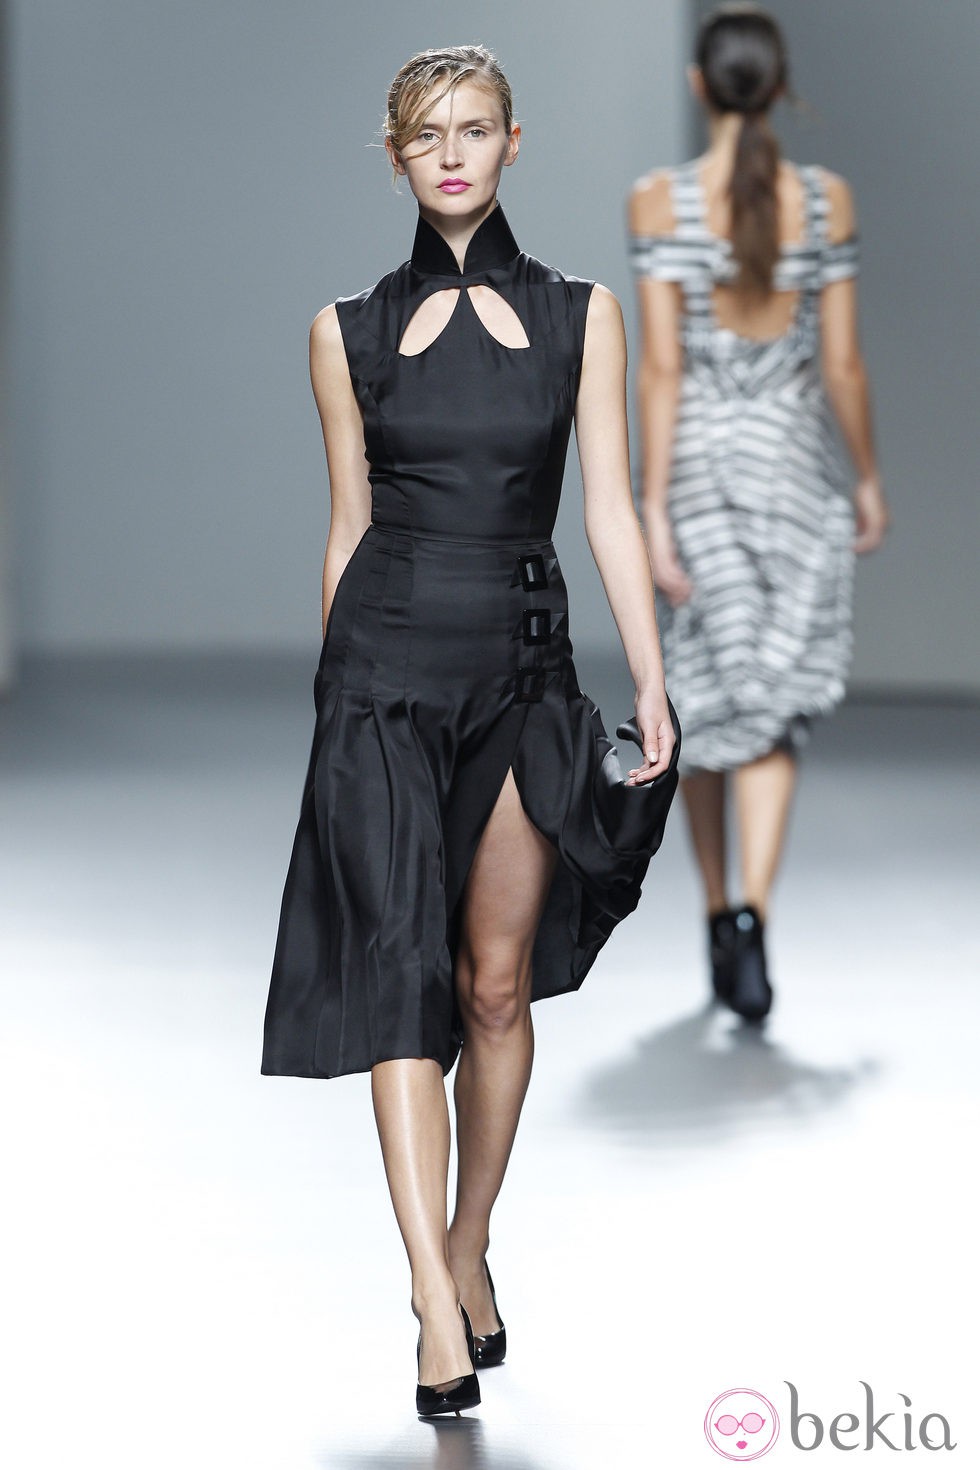 Vestido negro de la colección Juan Vidal primavera/verano 2014 en Madrid Fashion Week